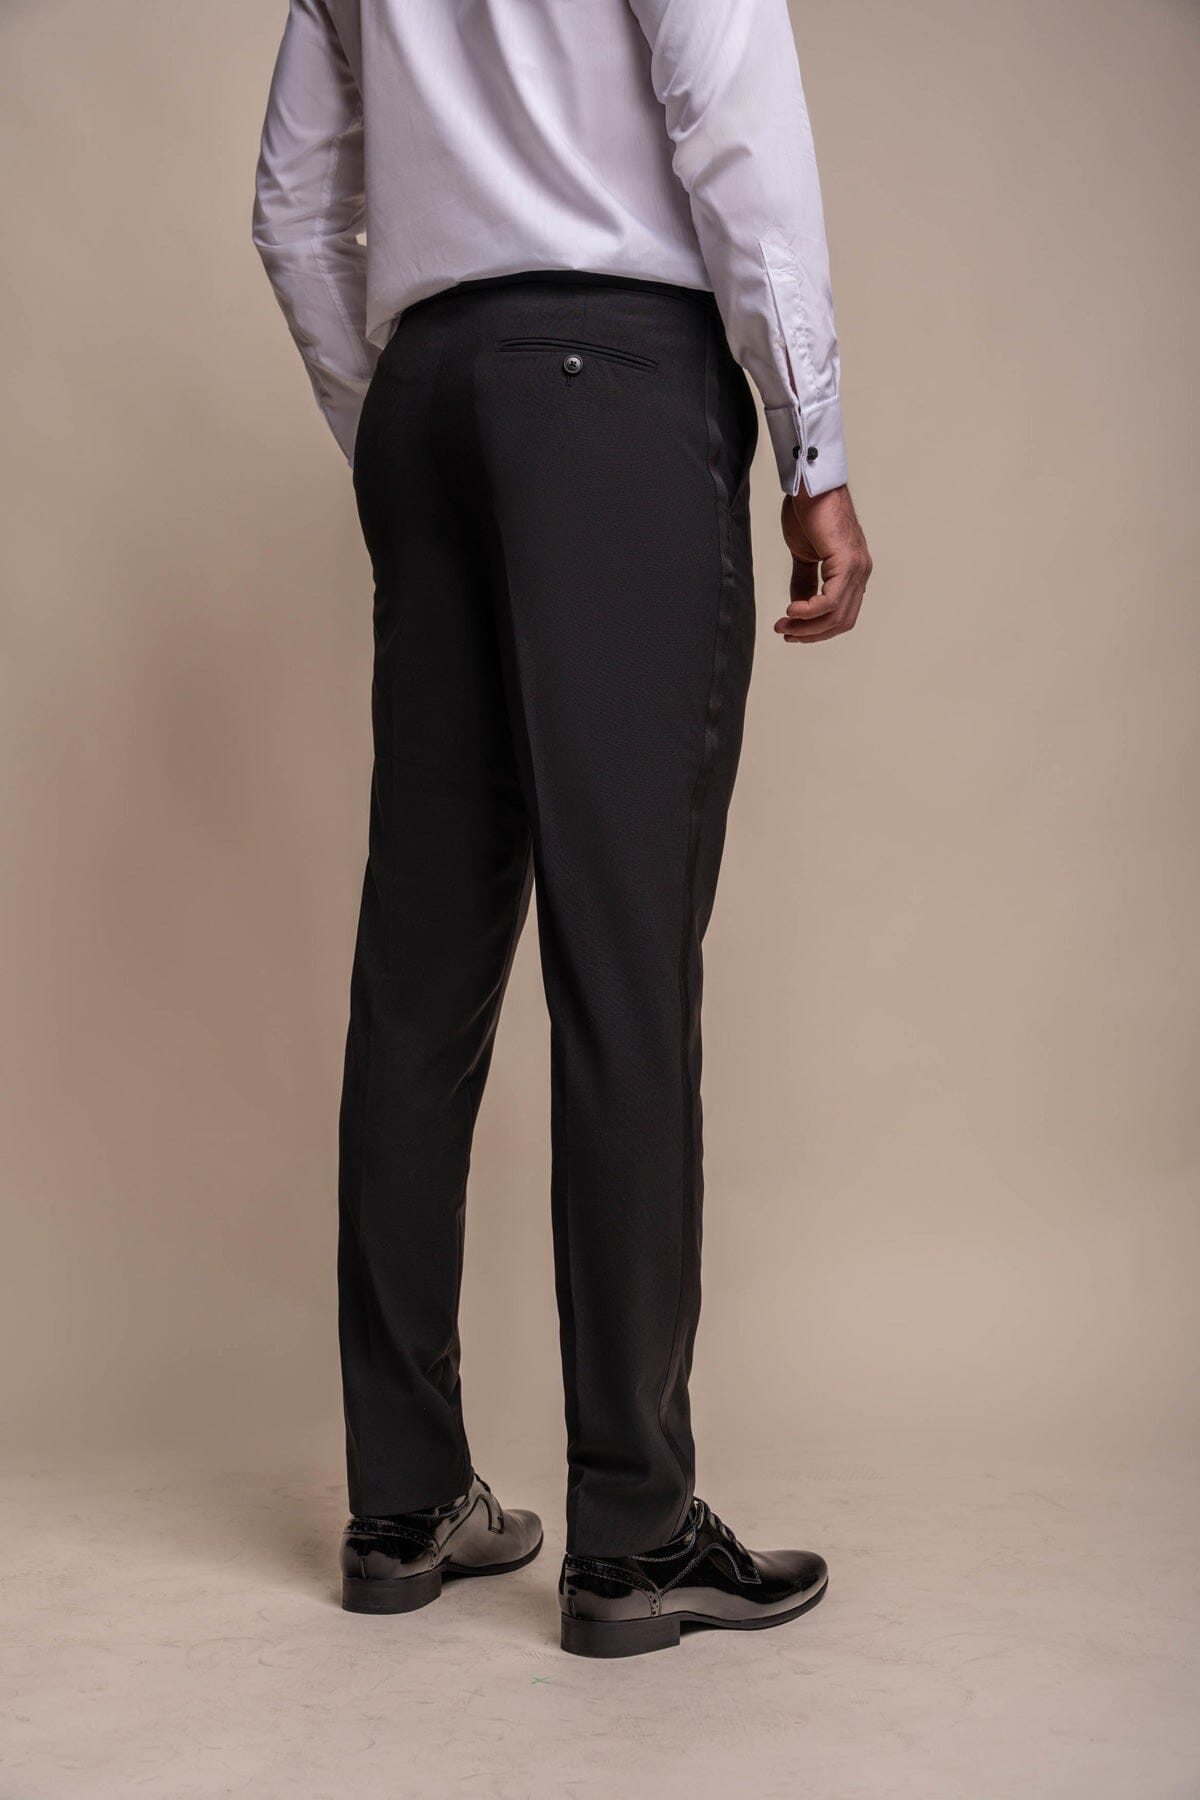 Aspen Black Tuxedo Trousers - Trousers - 